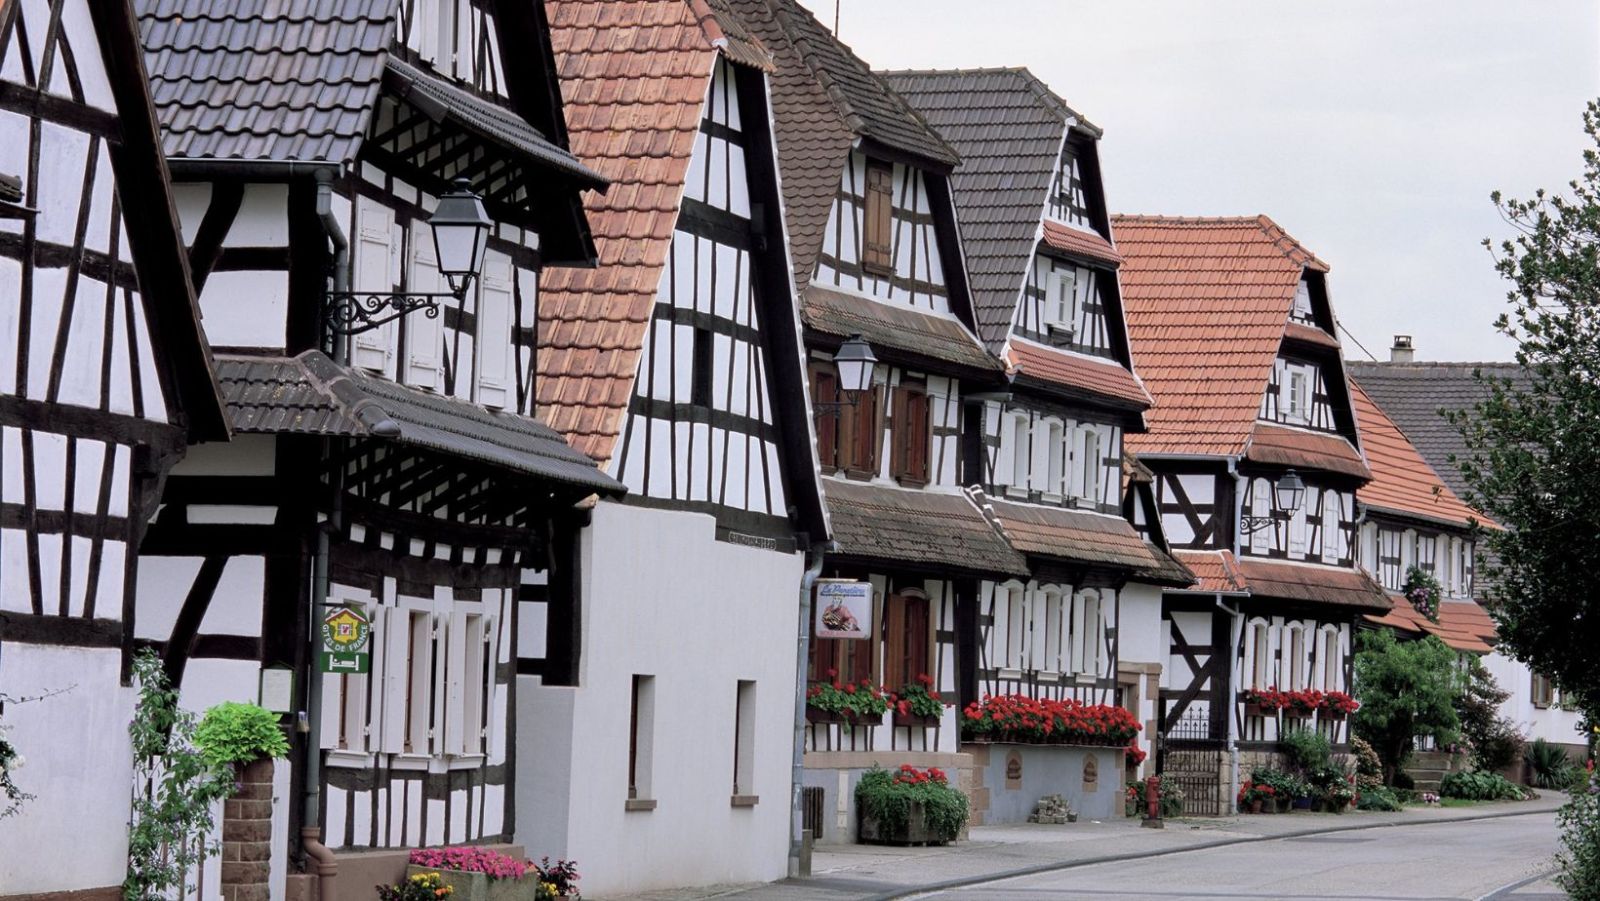 À seulement 60 km de Strasbourg, ce village de 650 âmes abrite plus de 200 nids de cigognes